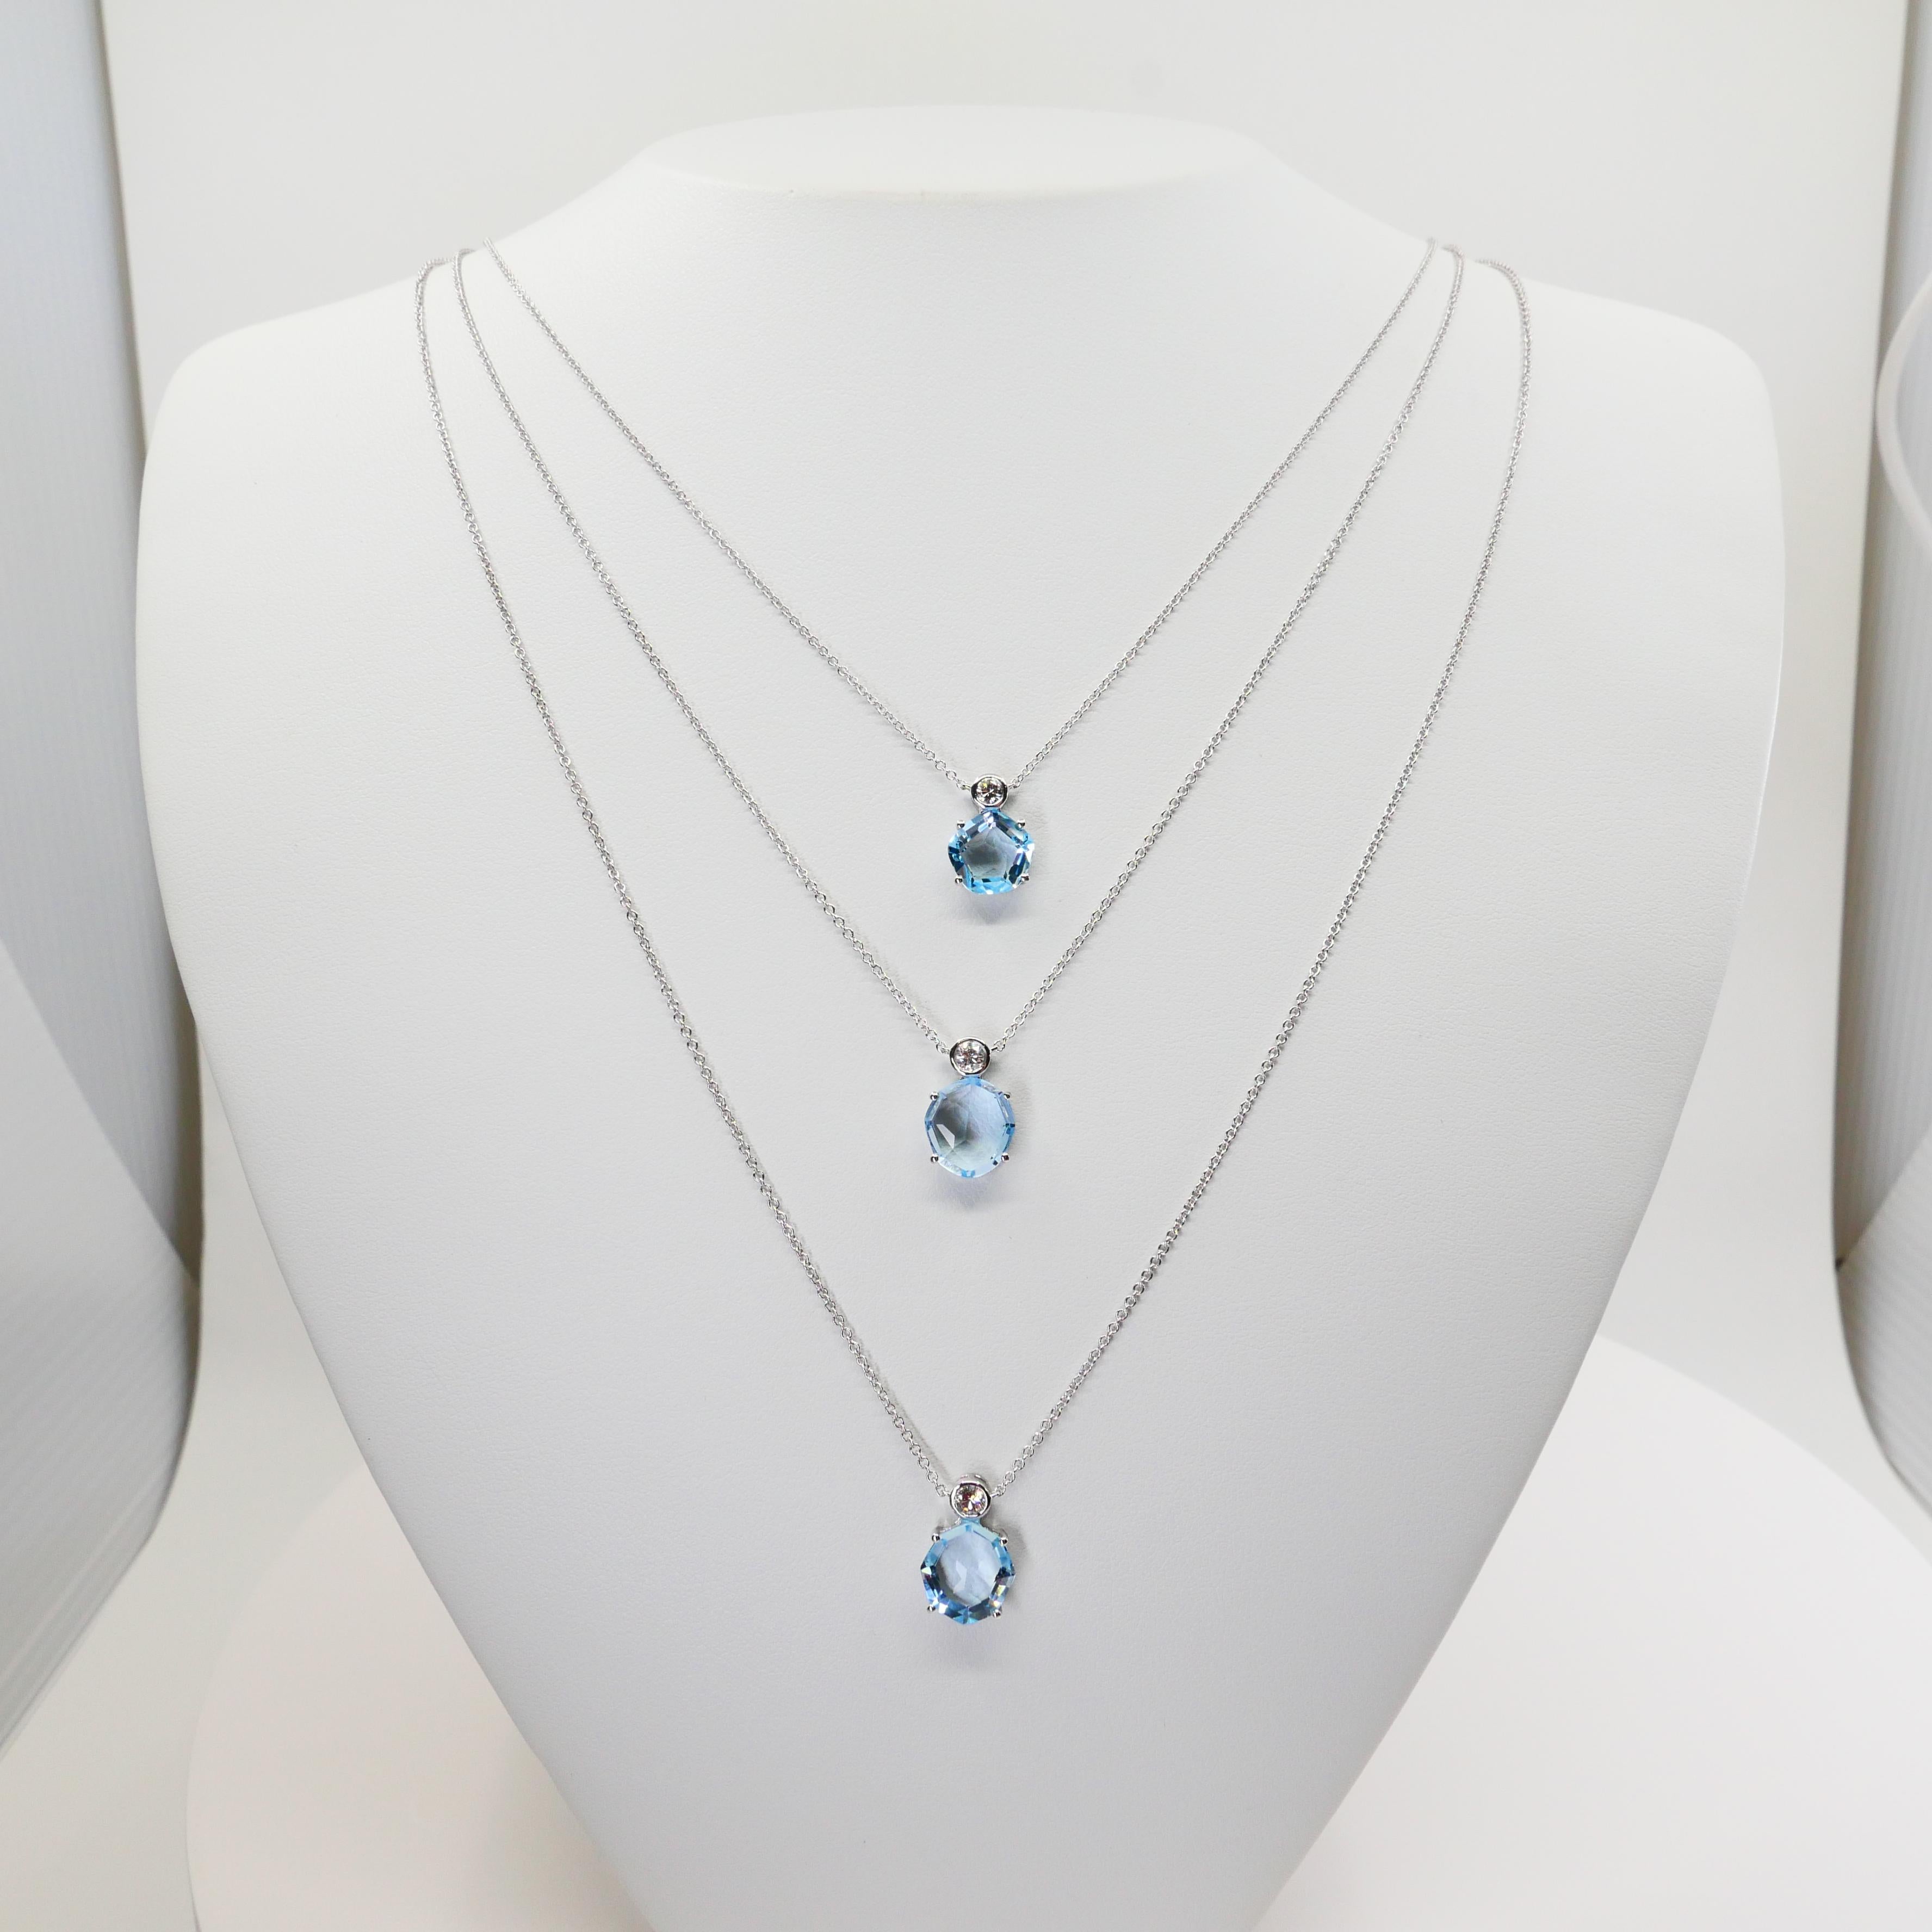 Regardez la vidéo HD ! Voici un très joli collier composé de topazes bleu poudre et de diamants. Il est serti en or blanc 18k. Les trois colliers séparés peuvent être portés tels qu'illustrés (superposés) ou individuellement. Chacun des 3 colliers